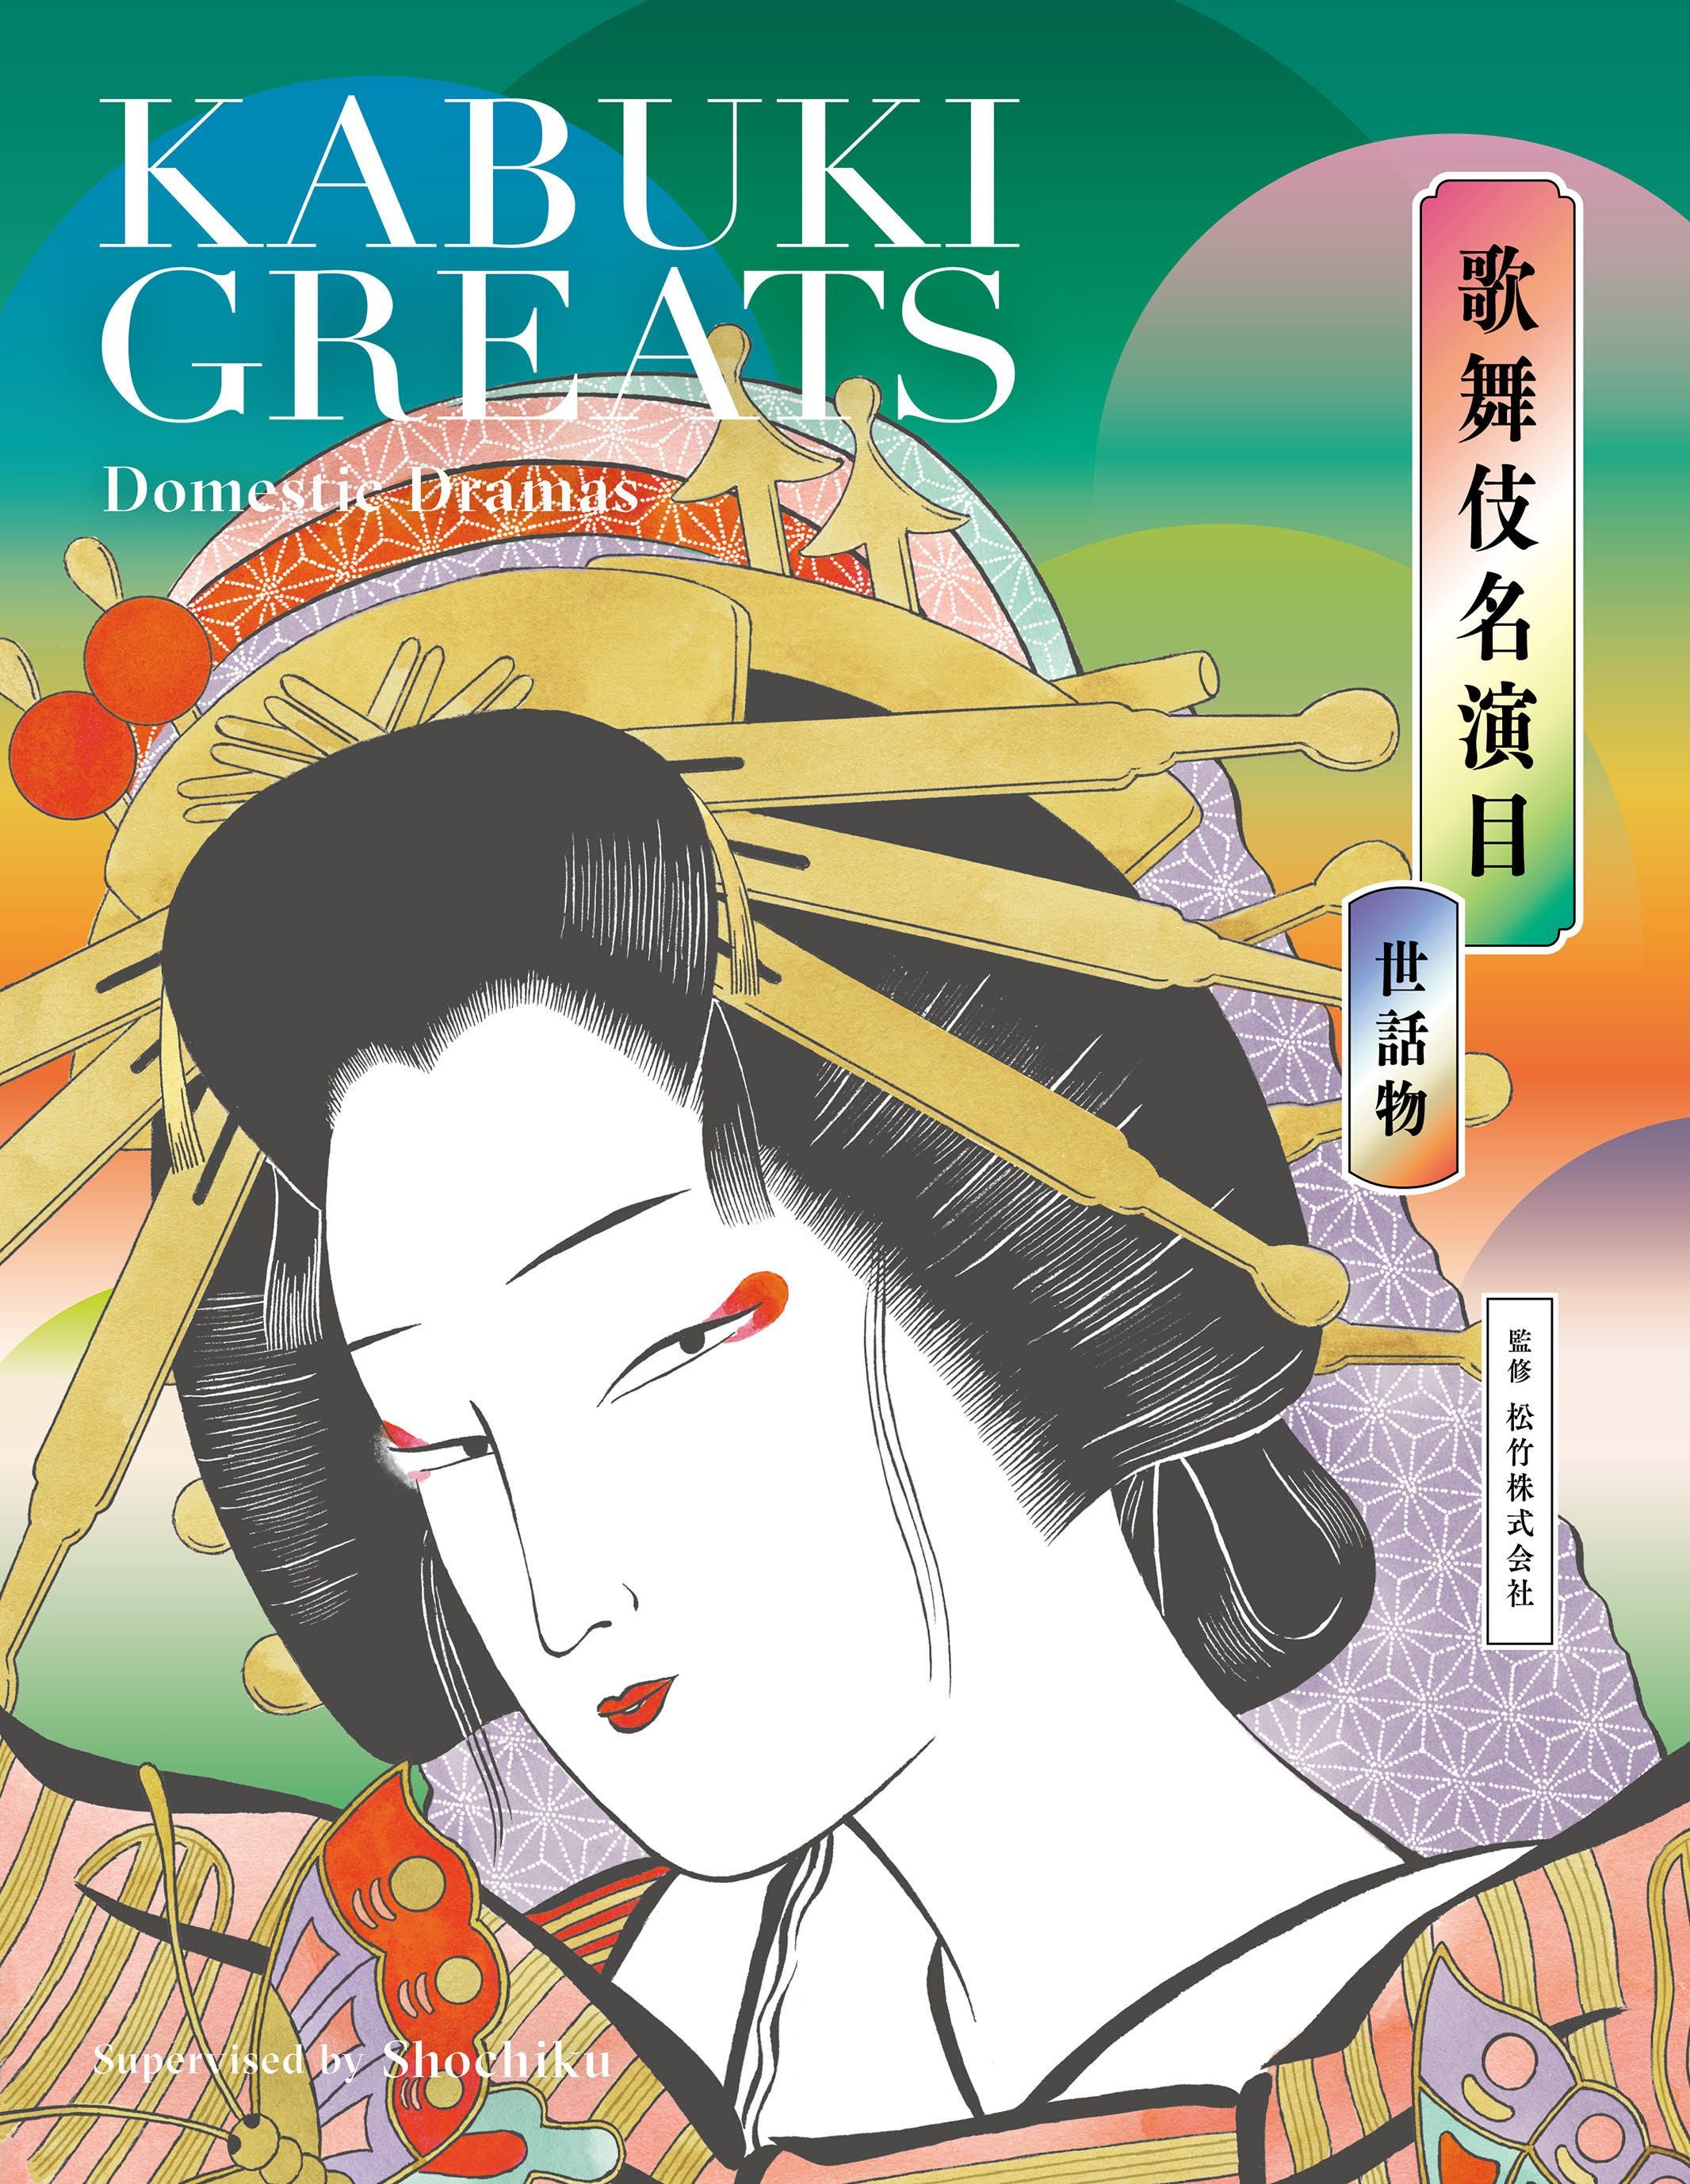 歌舞伎名演目 世話物 Kabuki Greats Domestic Dramas 株式会社美術出版社 アートを社会に実装させる